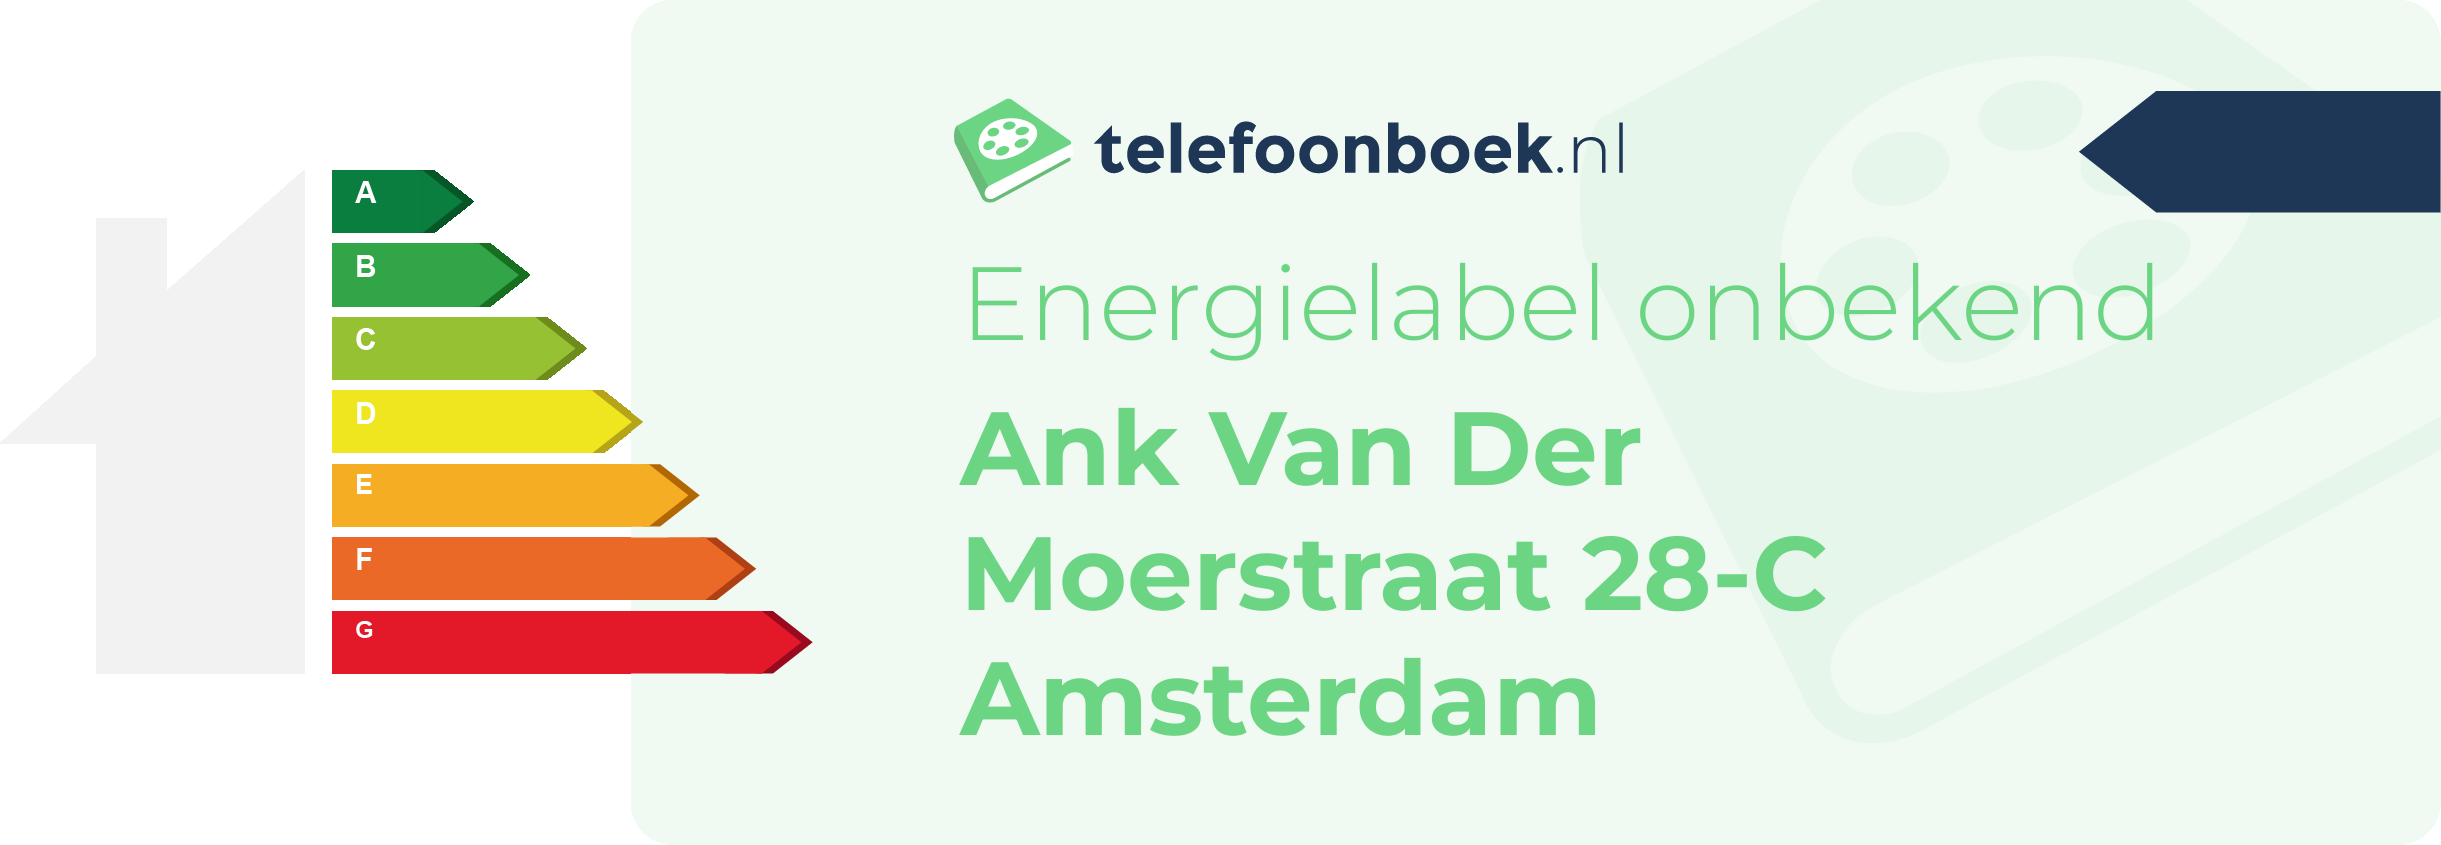 Energielabel Ank Van Der Moerstraat 28-C Amsterdam